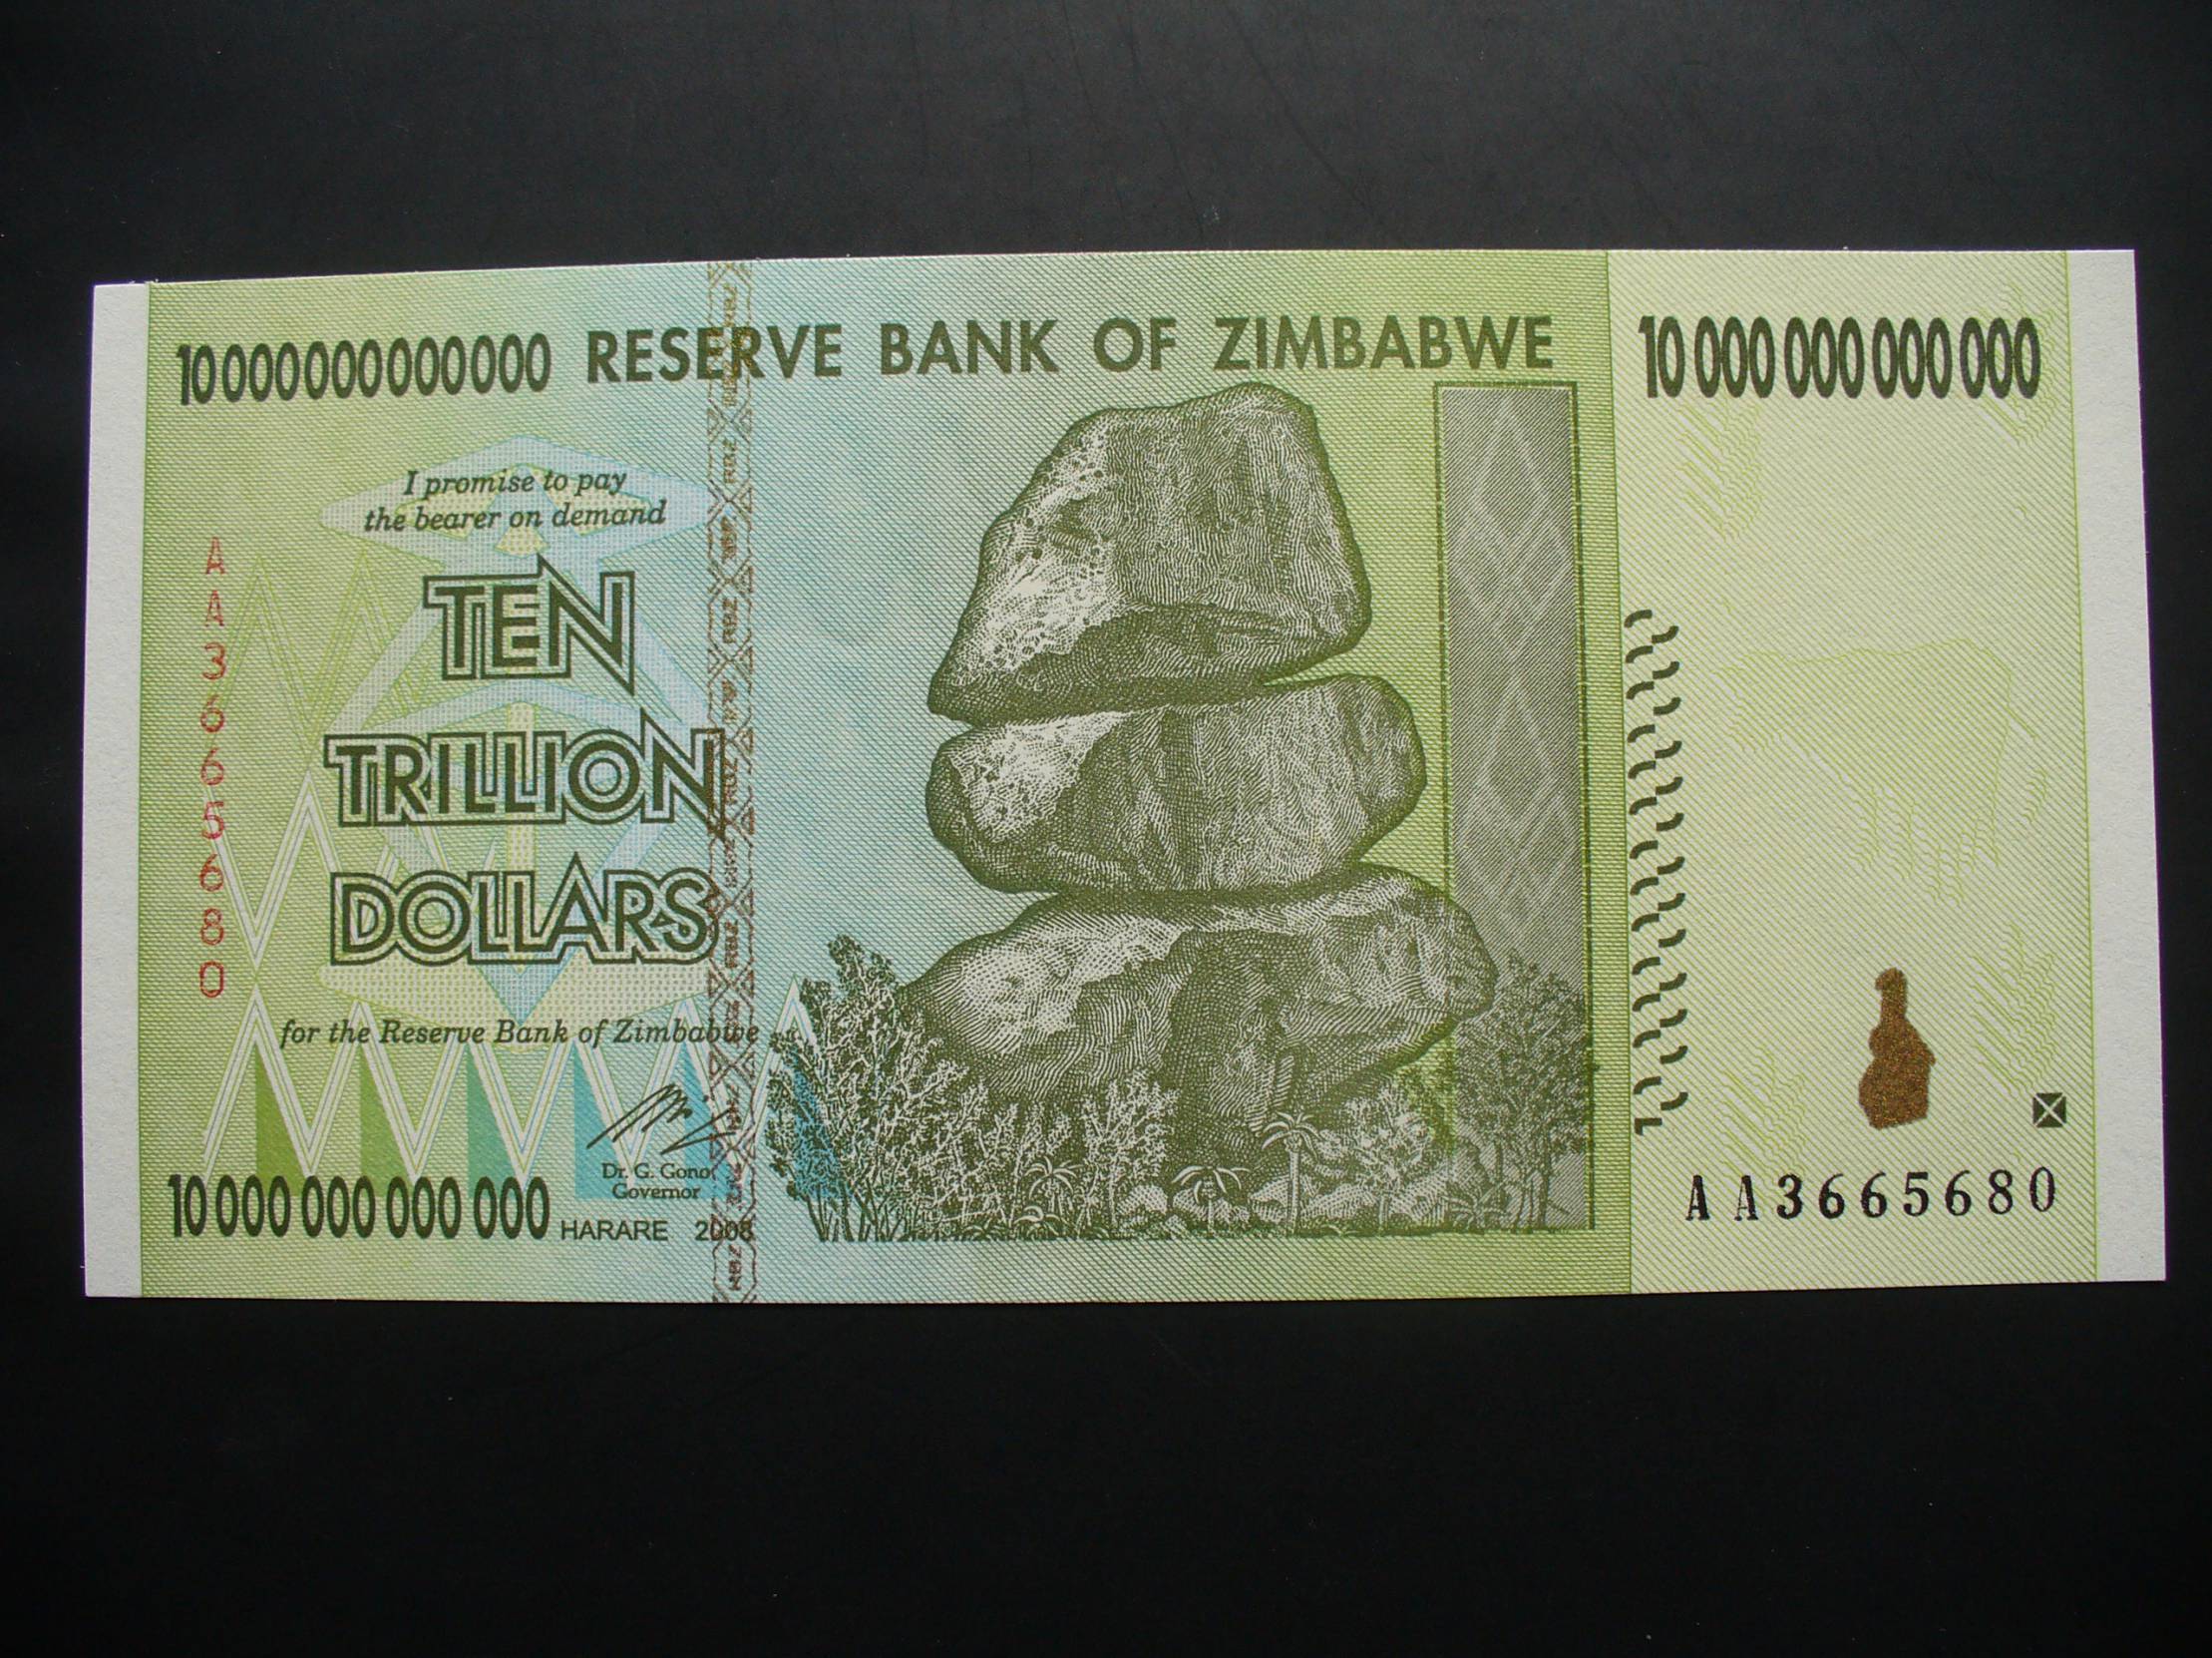 10000000000000 денег. Купюра 10 триллионов долларов Зимбабве. Купюра в 10 триллионов зимбабвийских долларов. Купюра 10000000000000 рублей. Купюры Зимбабве 500 триллионов долларов.